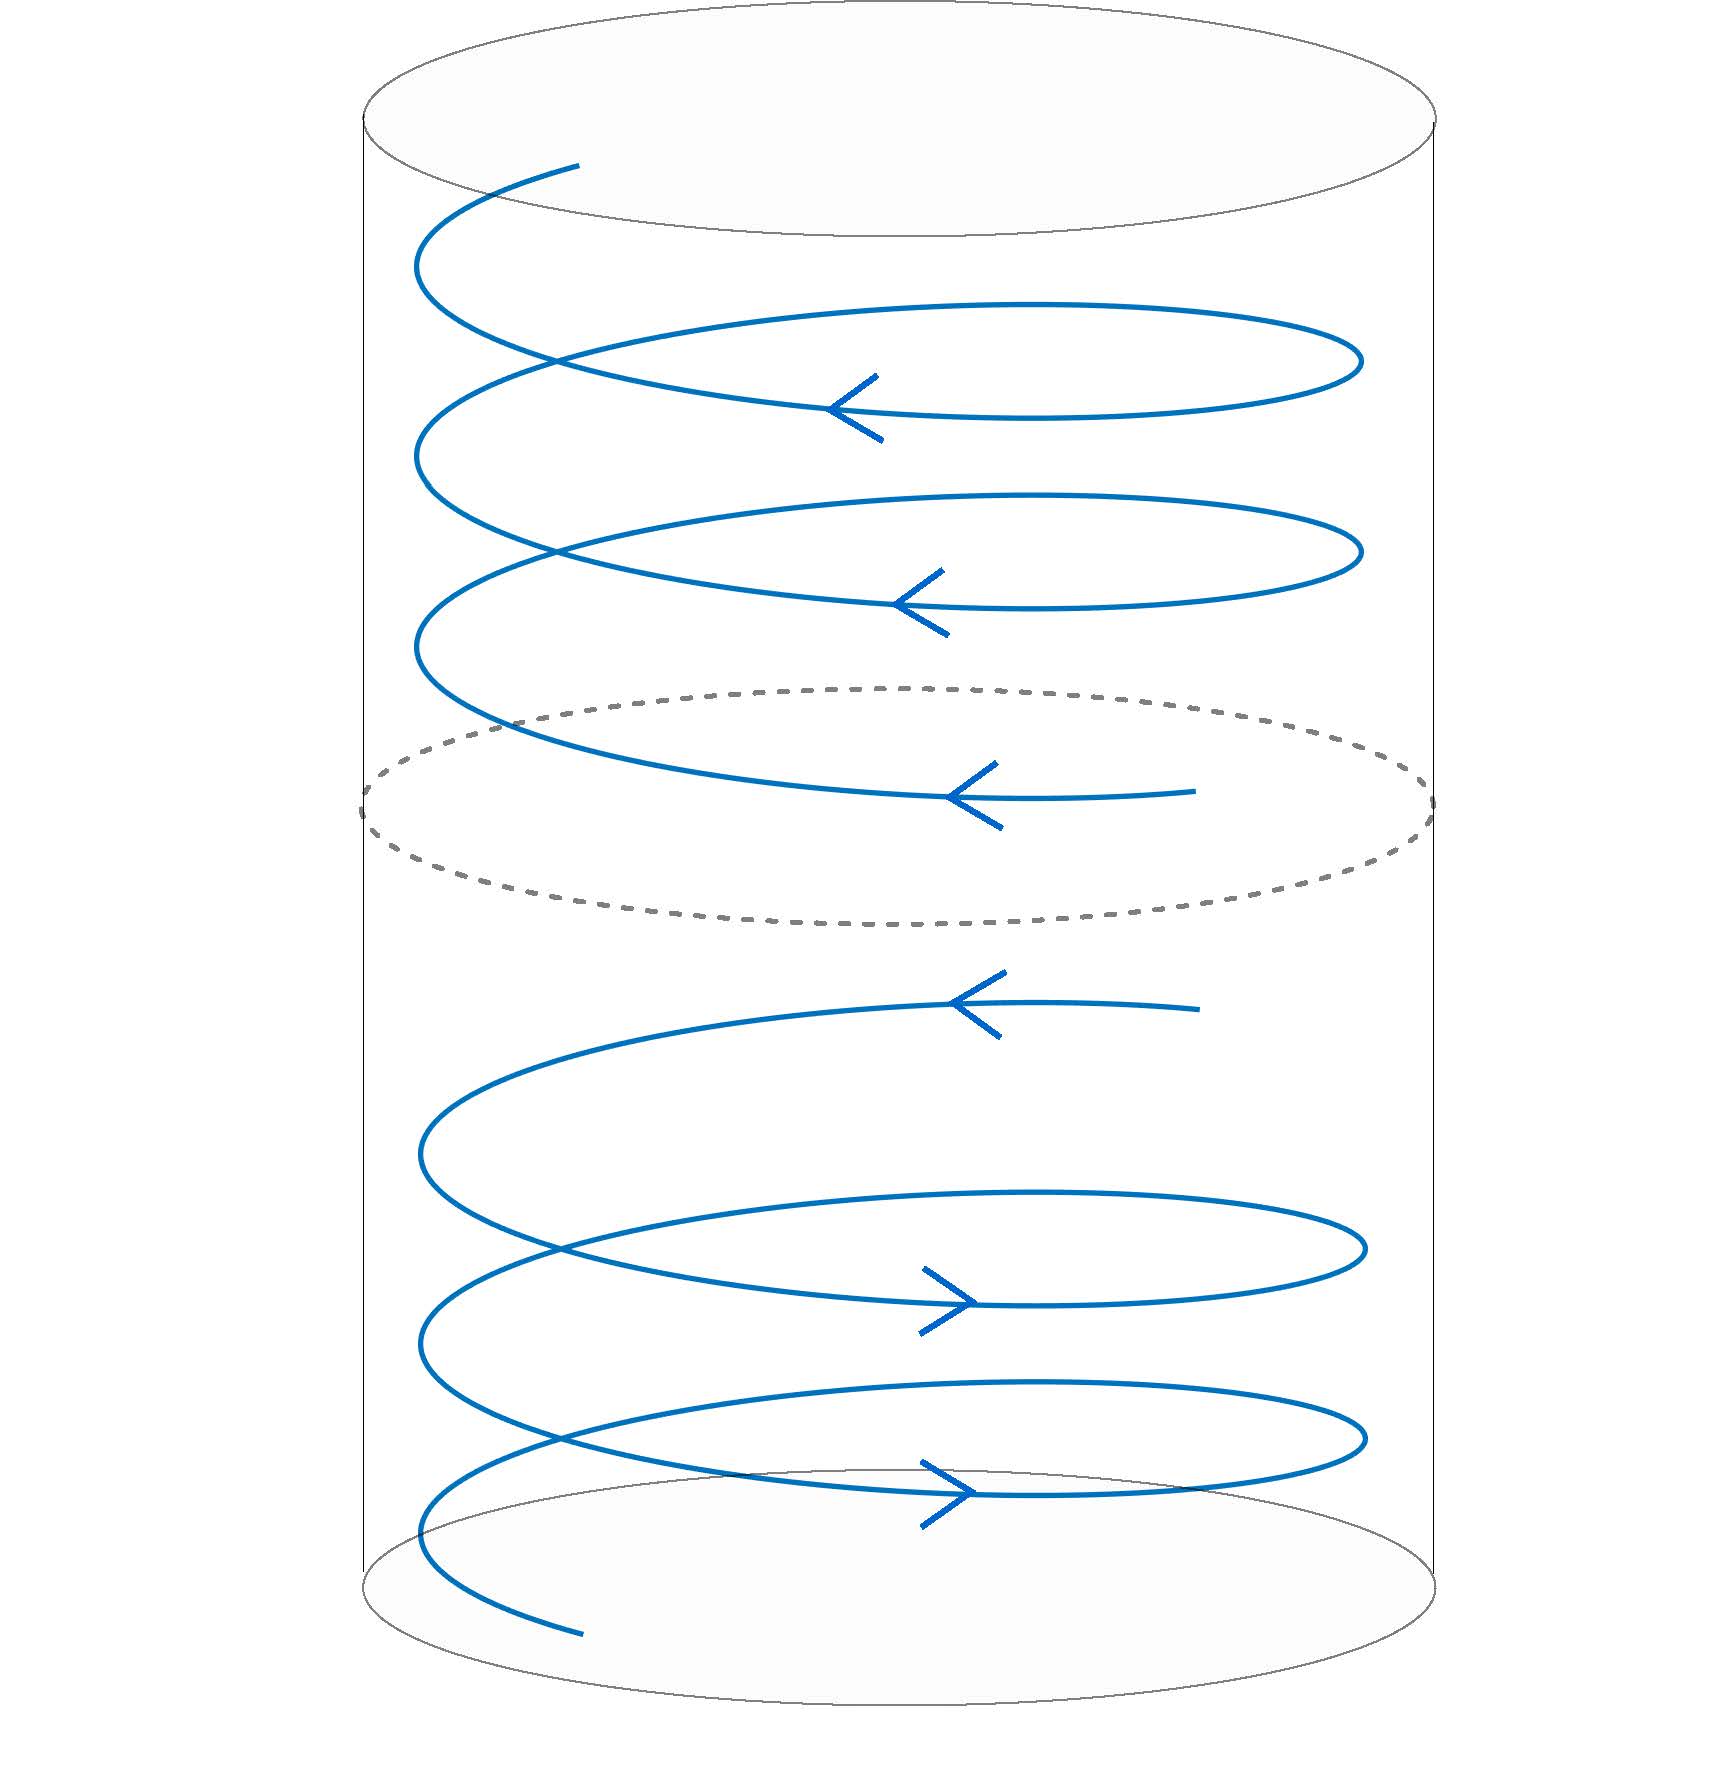 Representación de la simulación de Luo y Hou, en la que el fluido se desplaza dentro de un cilindro